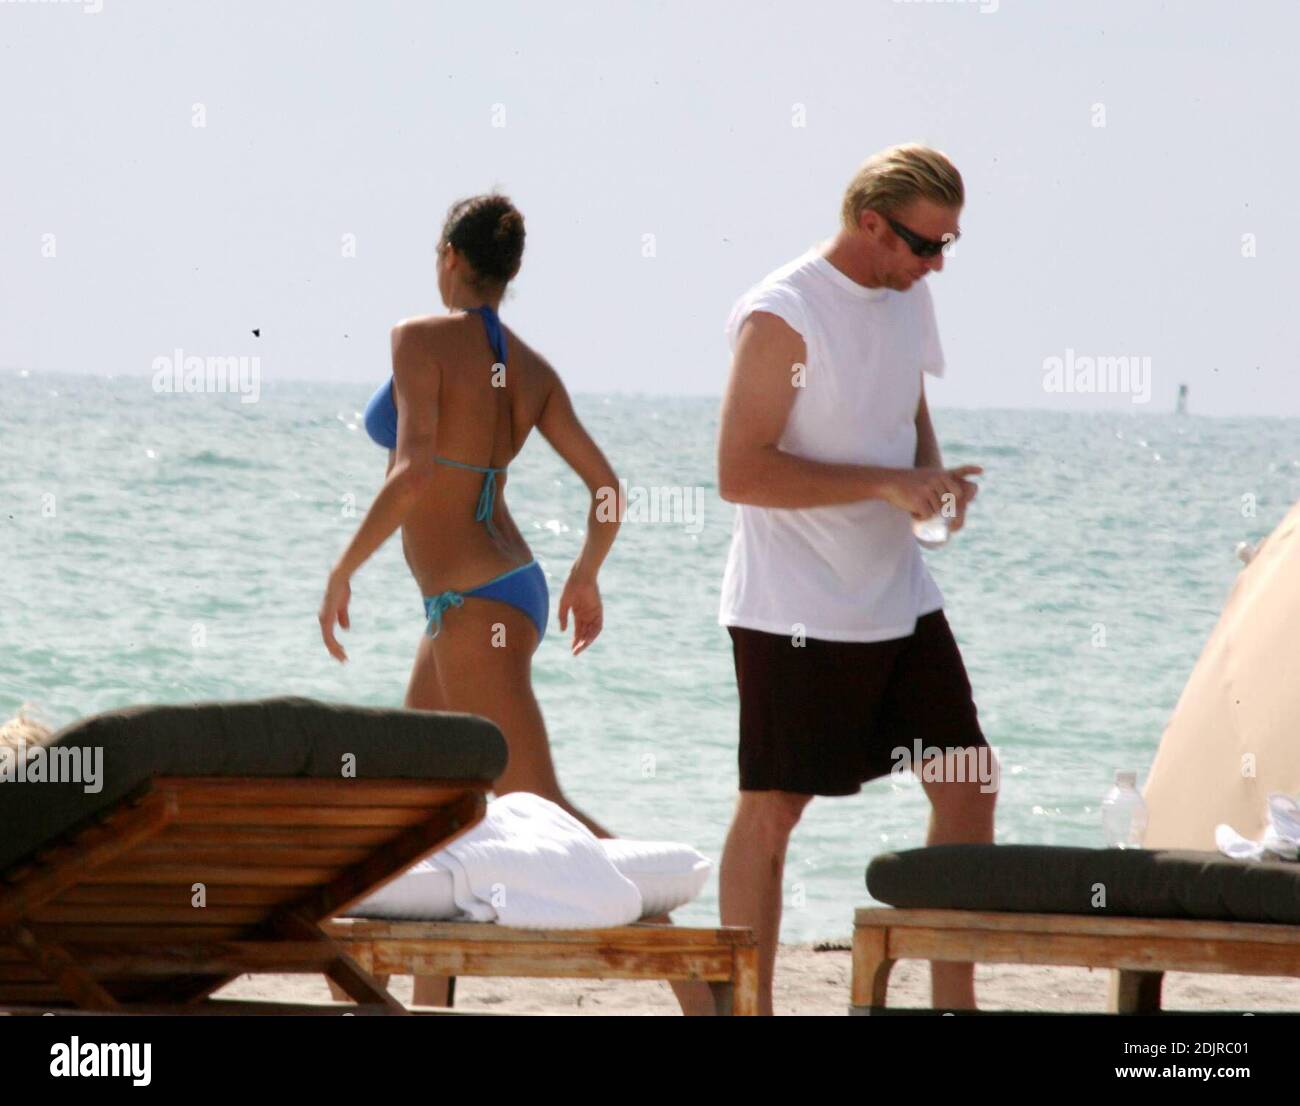 Boris Becker y su novia Sharlely Kerssenberg disfrutan de un baño durante su estancia en Miami Beach, FL 10/09/06 Foto de stock